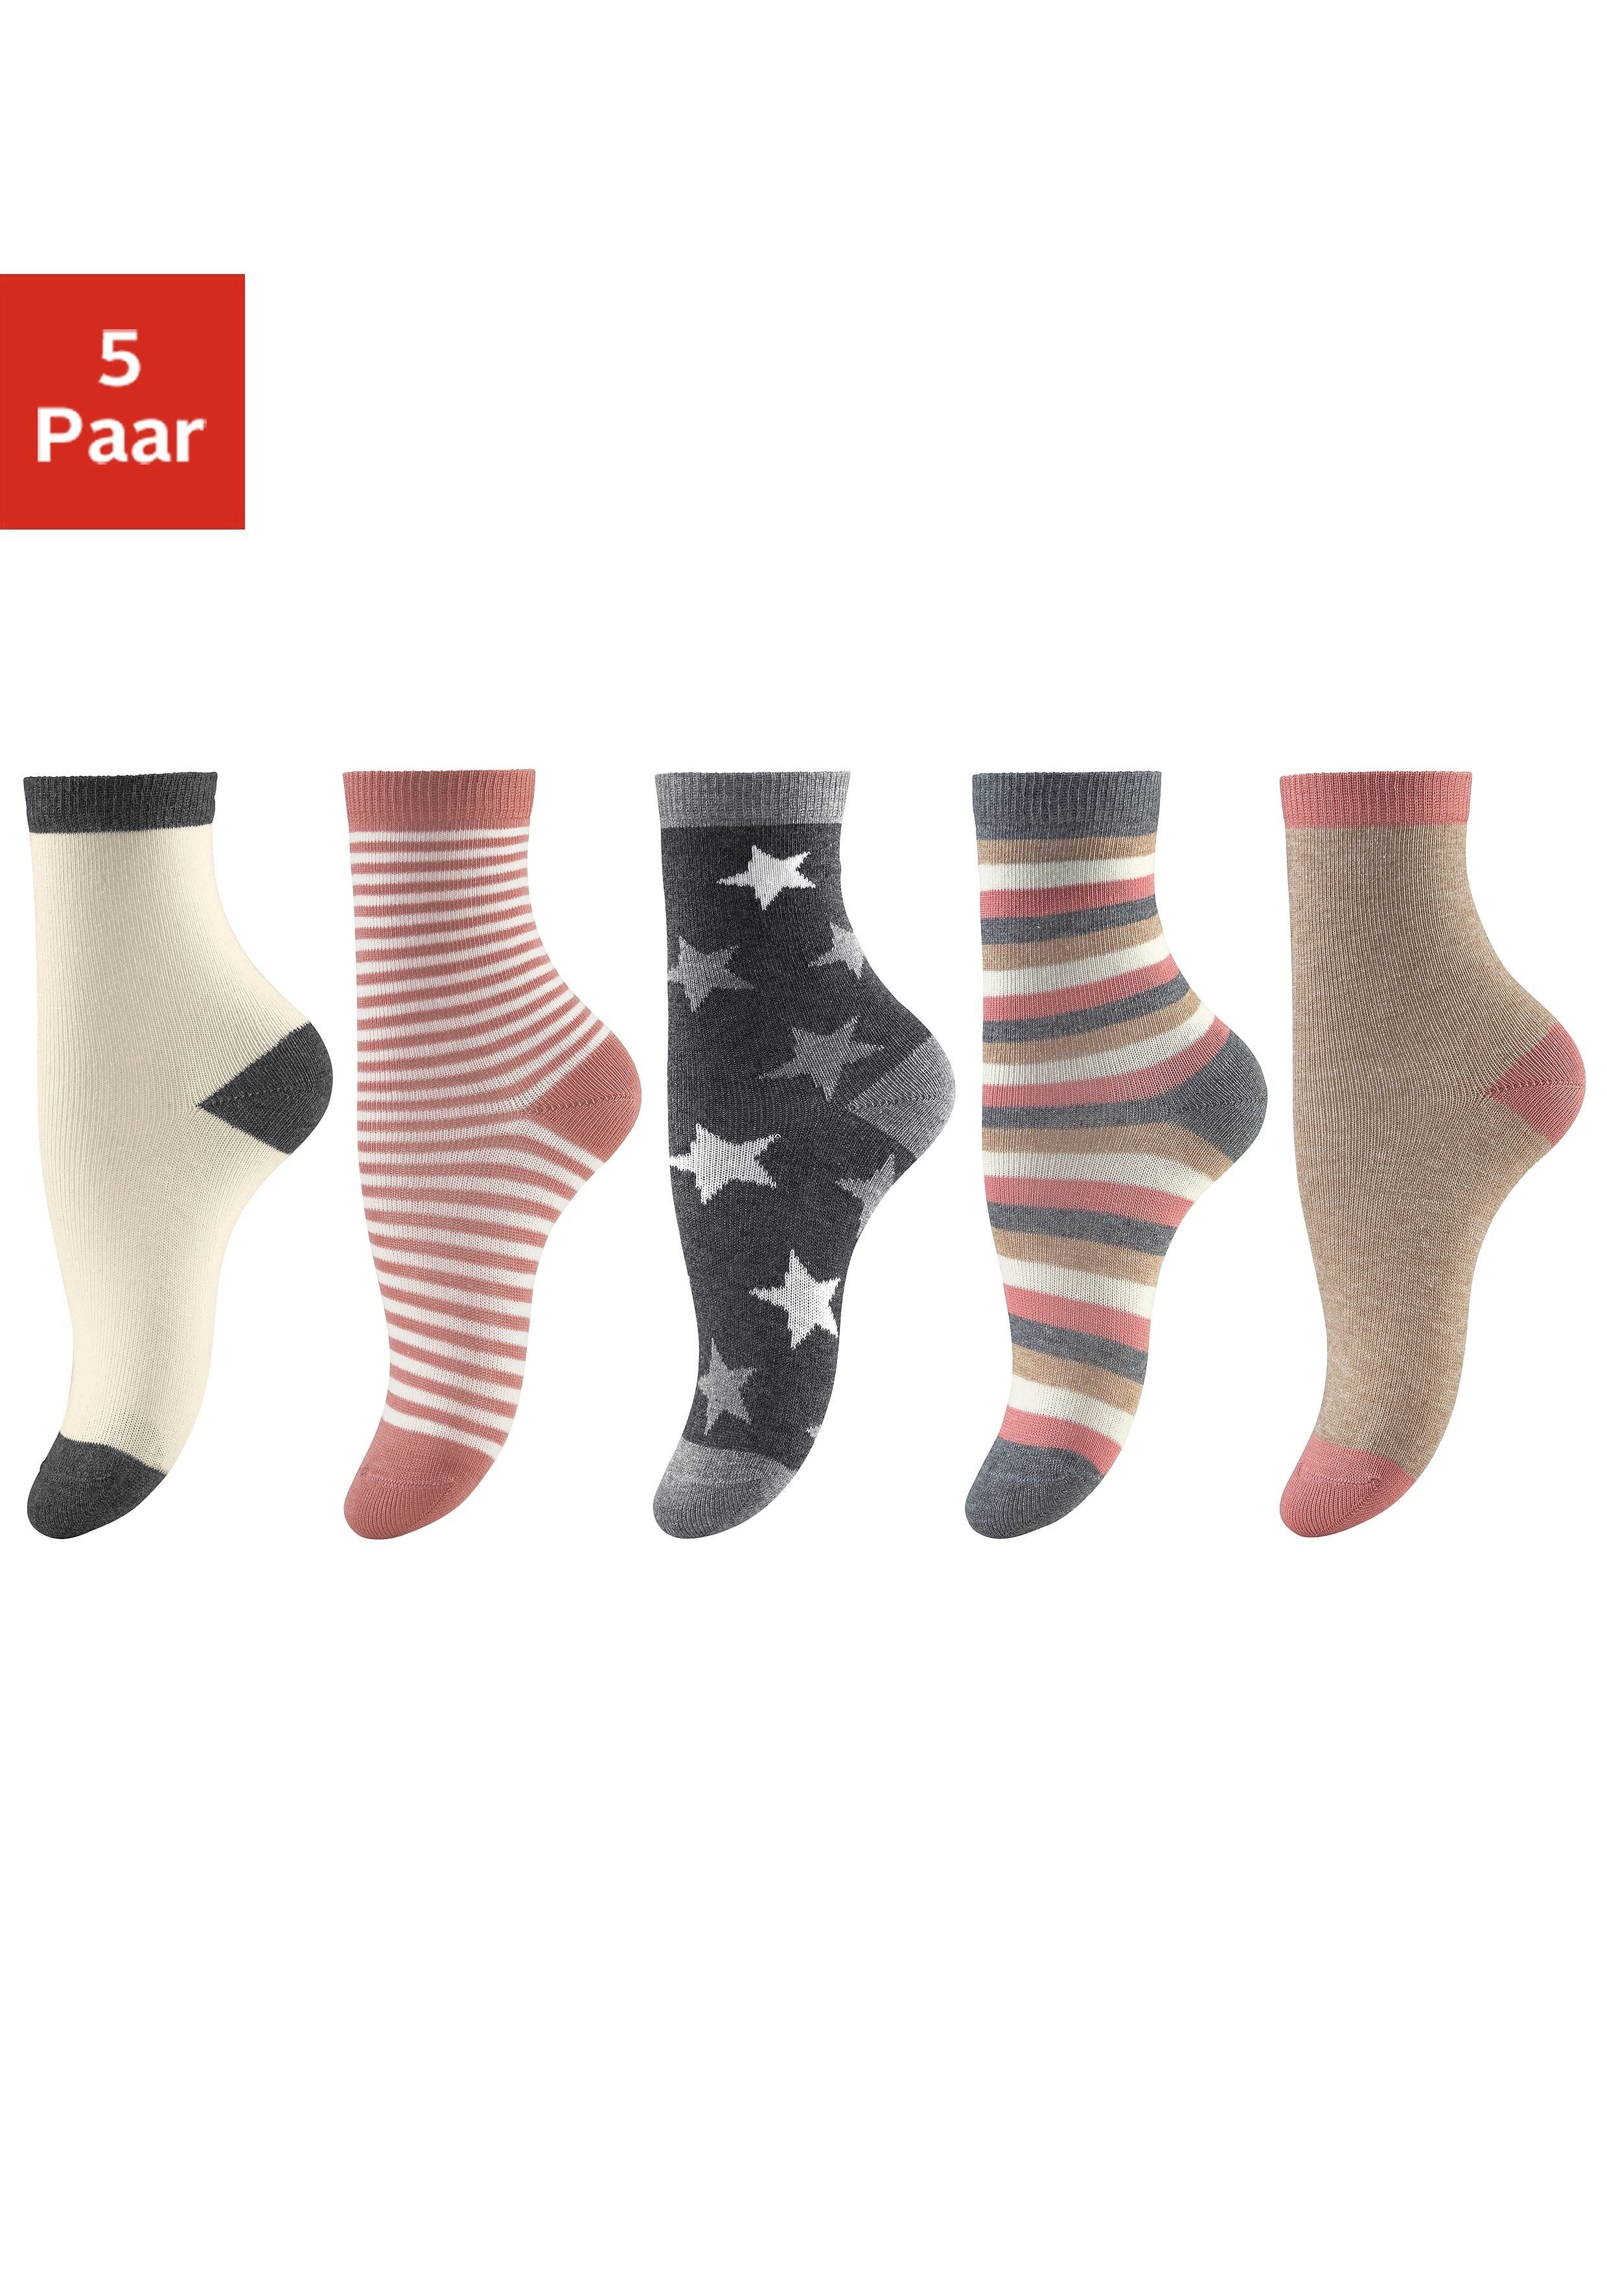 Socken (5-Paar) in verschiedenen Designs 5